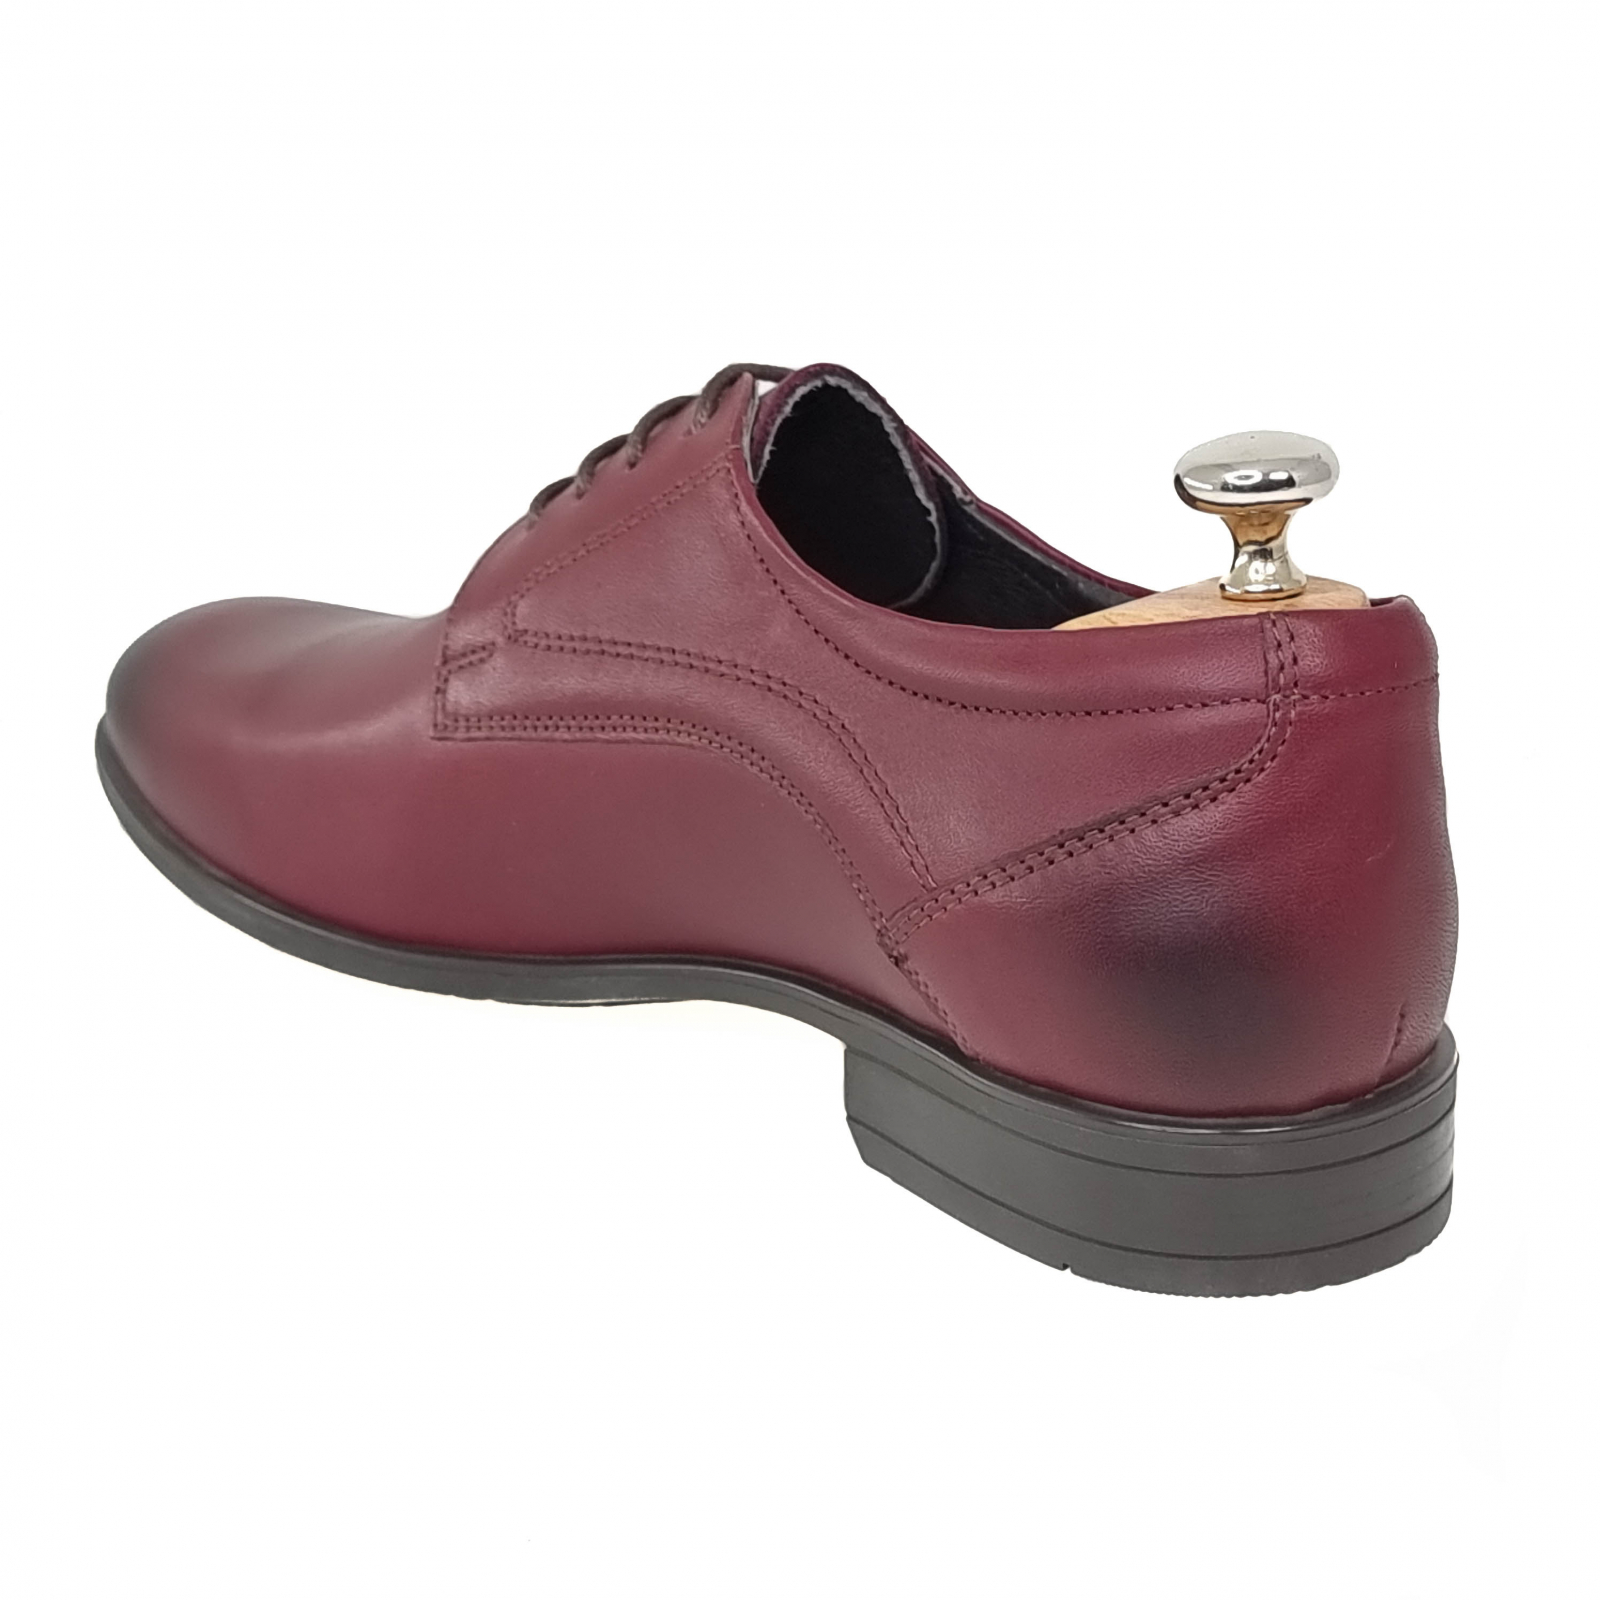 Pantofi piele pentru barbati BORDO COD-1276